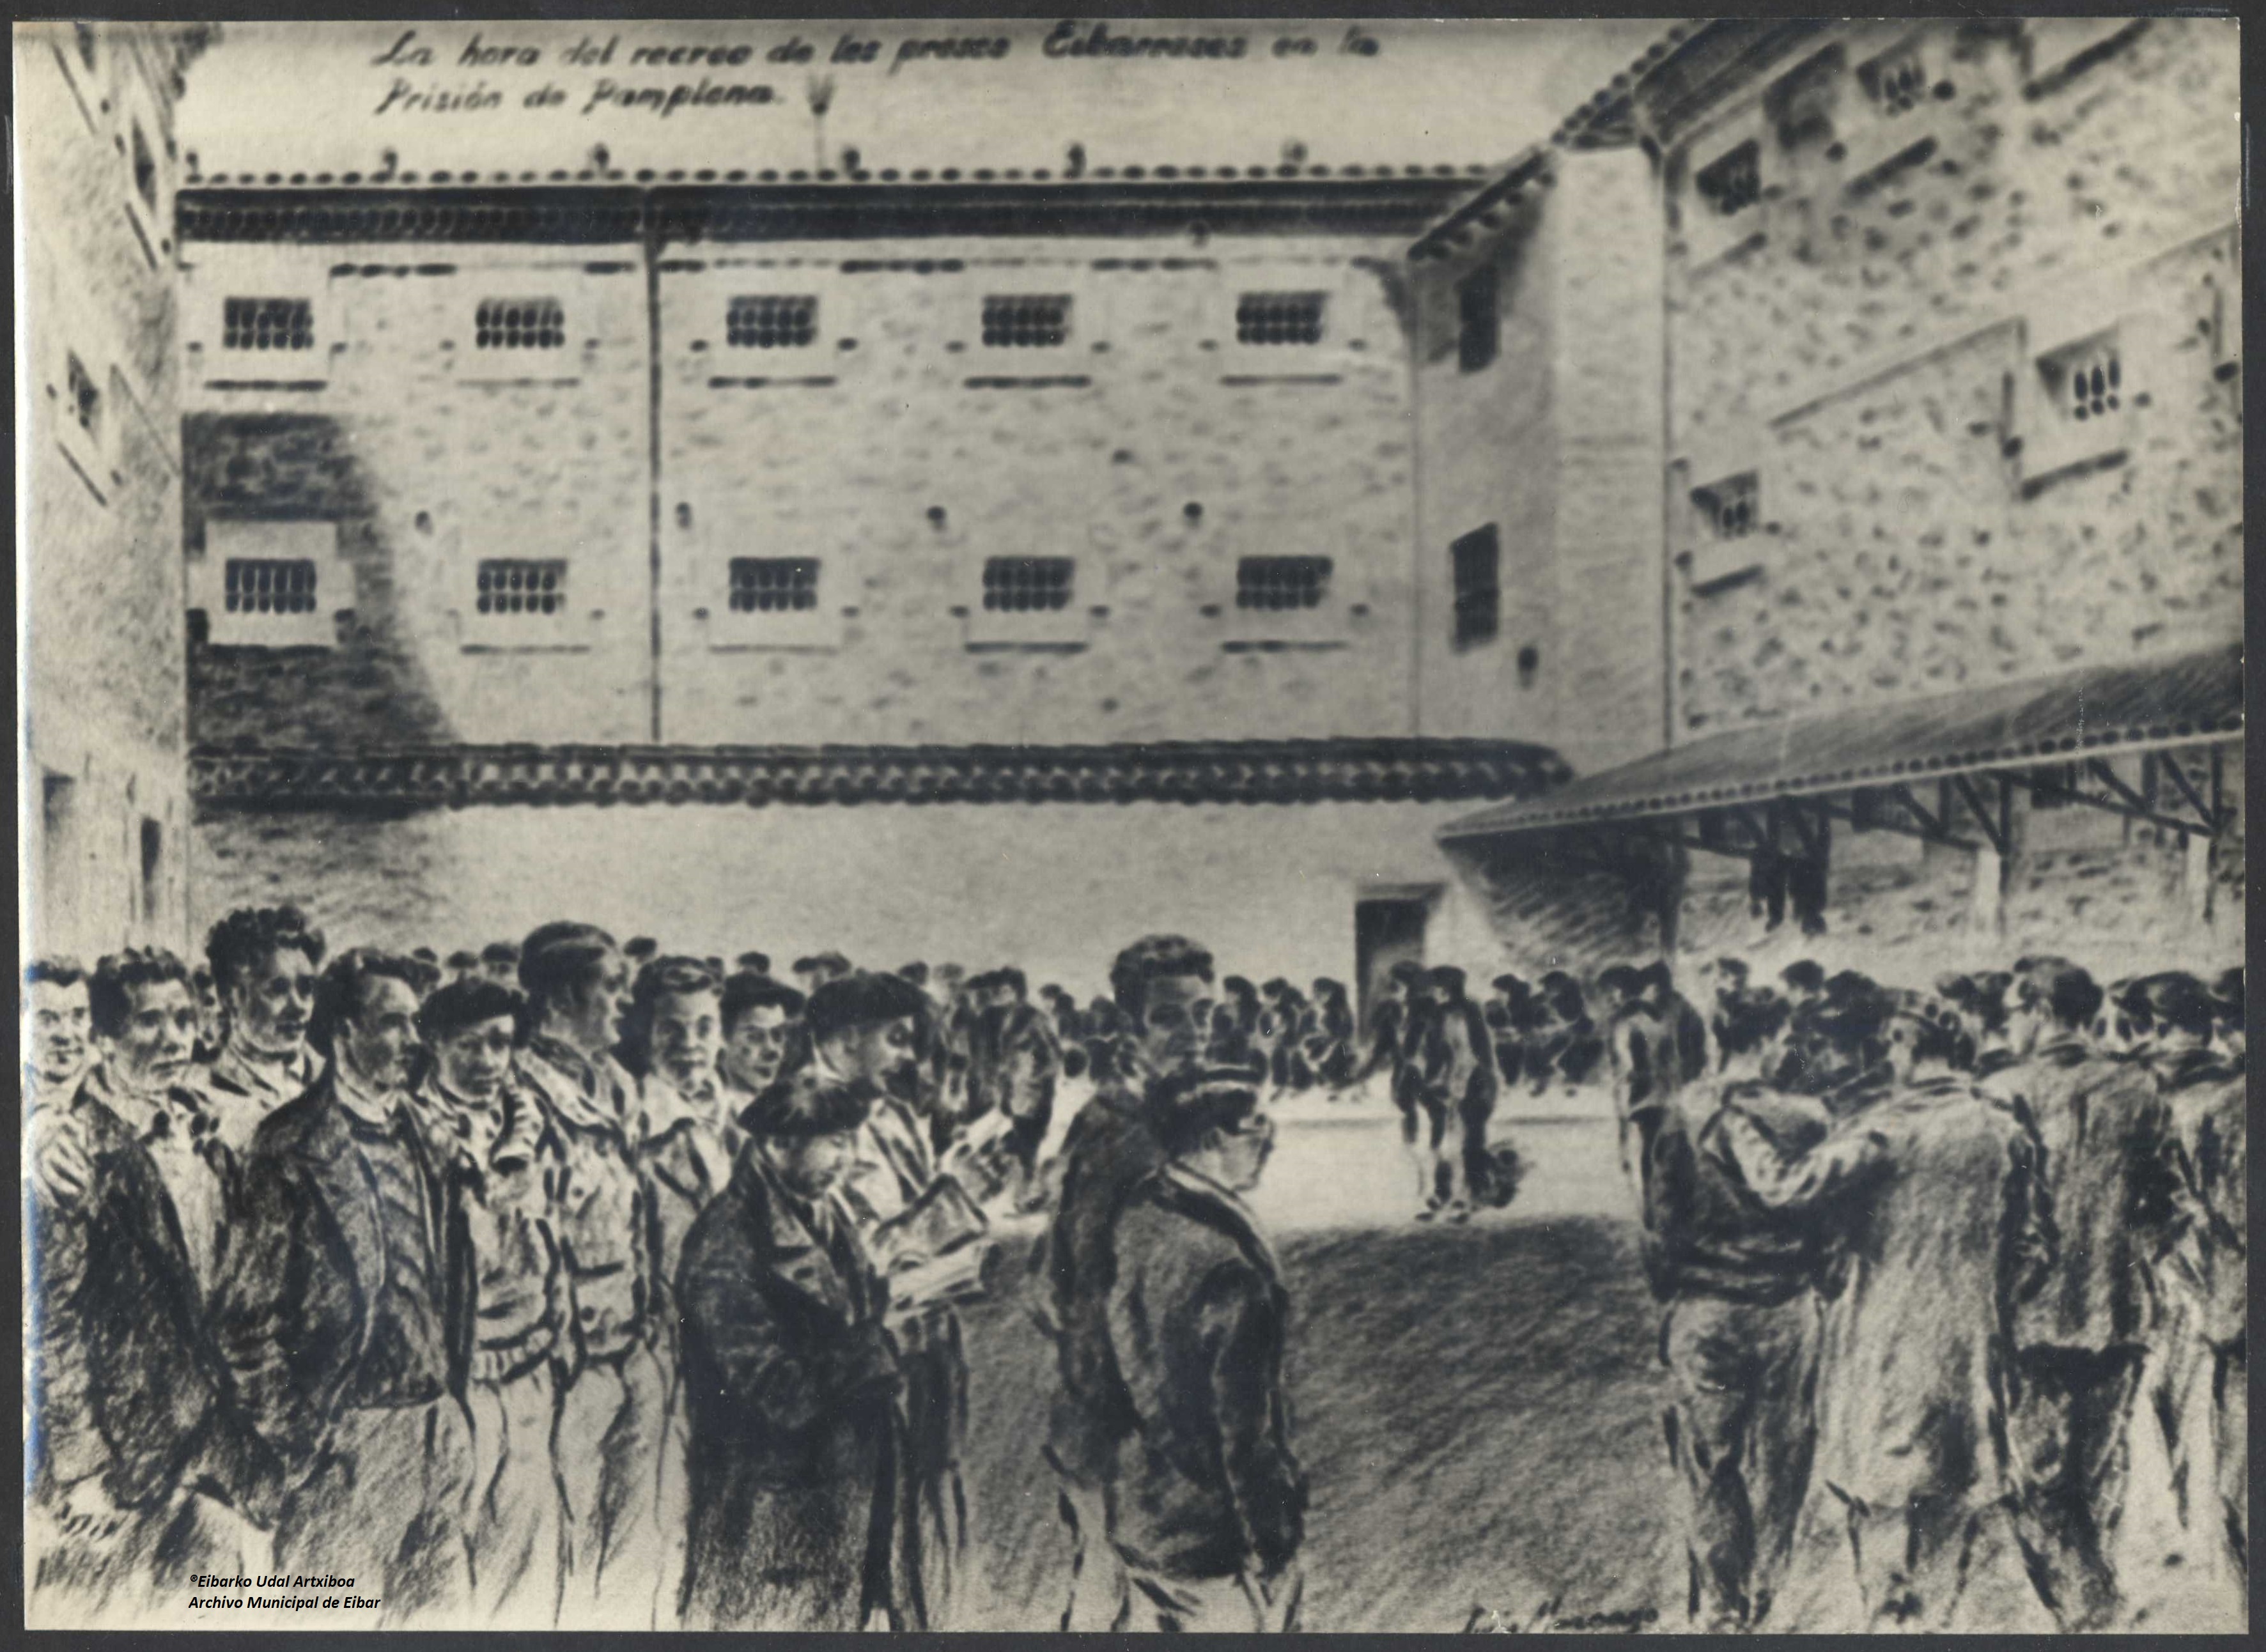 El Archivo Municipal de Eibar publica los nombres de los 238 eibarreses detenidos en la Prisión Provincial de Pamplona en octubre de 1934.